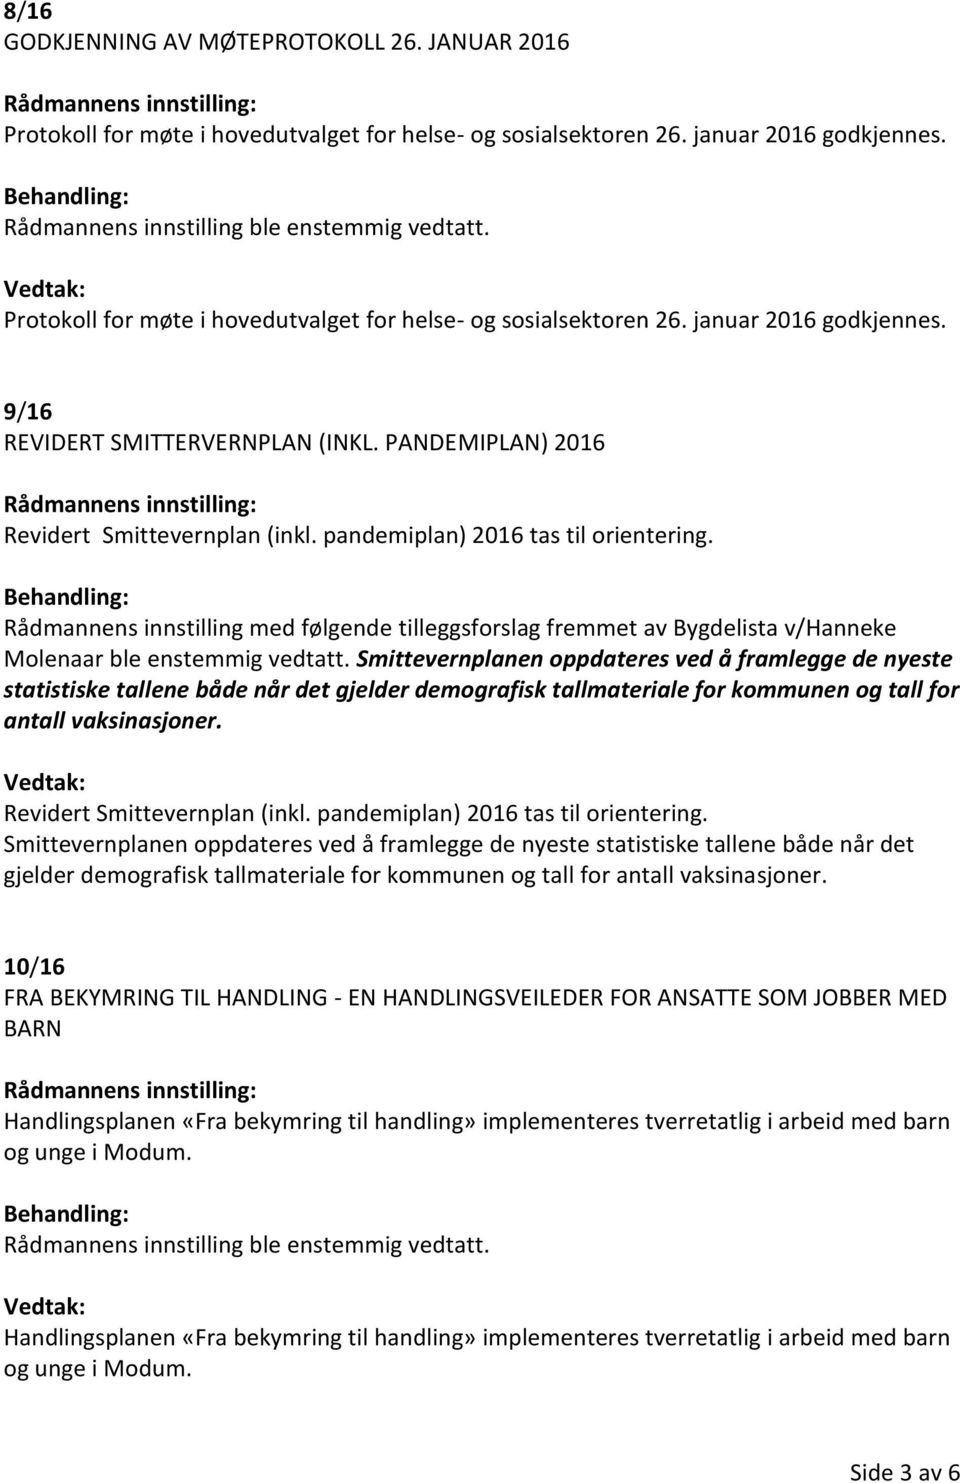 pandemiplan) 2016 tas til orientering. Rådmannens innstilling med følgende tilleggsforslag fremmet av Bygdelista v/hanneke Molenaar ble enstemmig vedtatt.